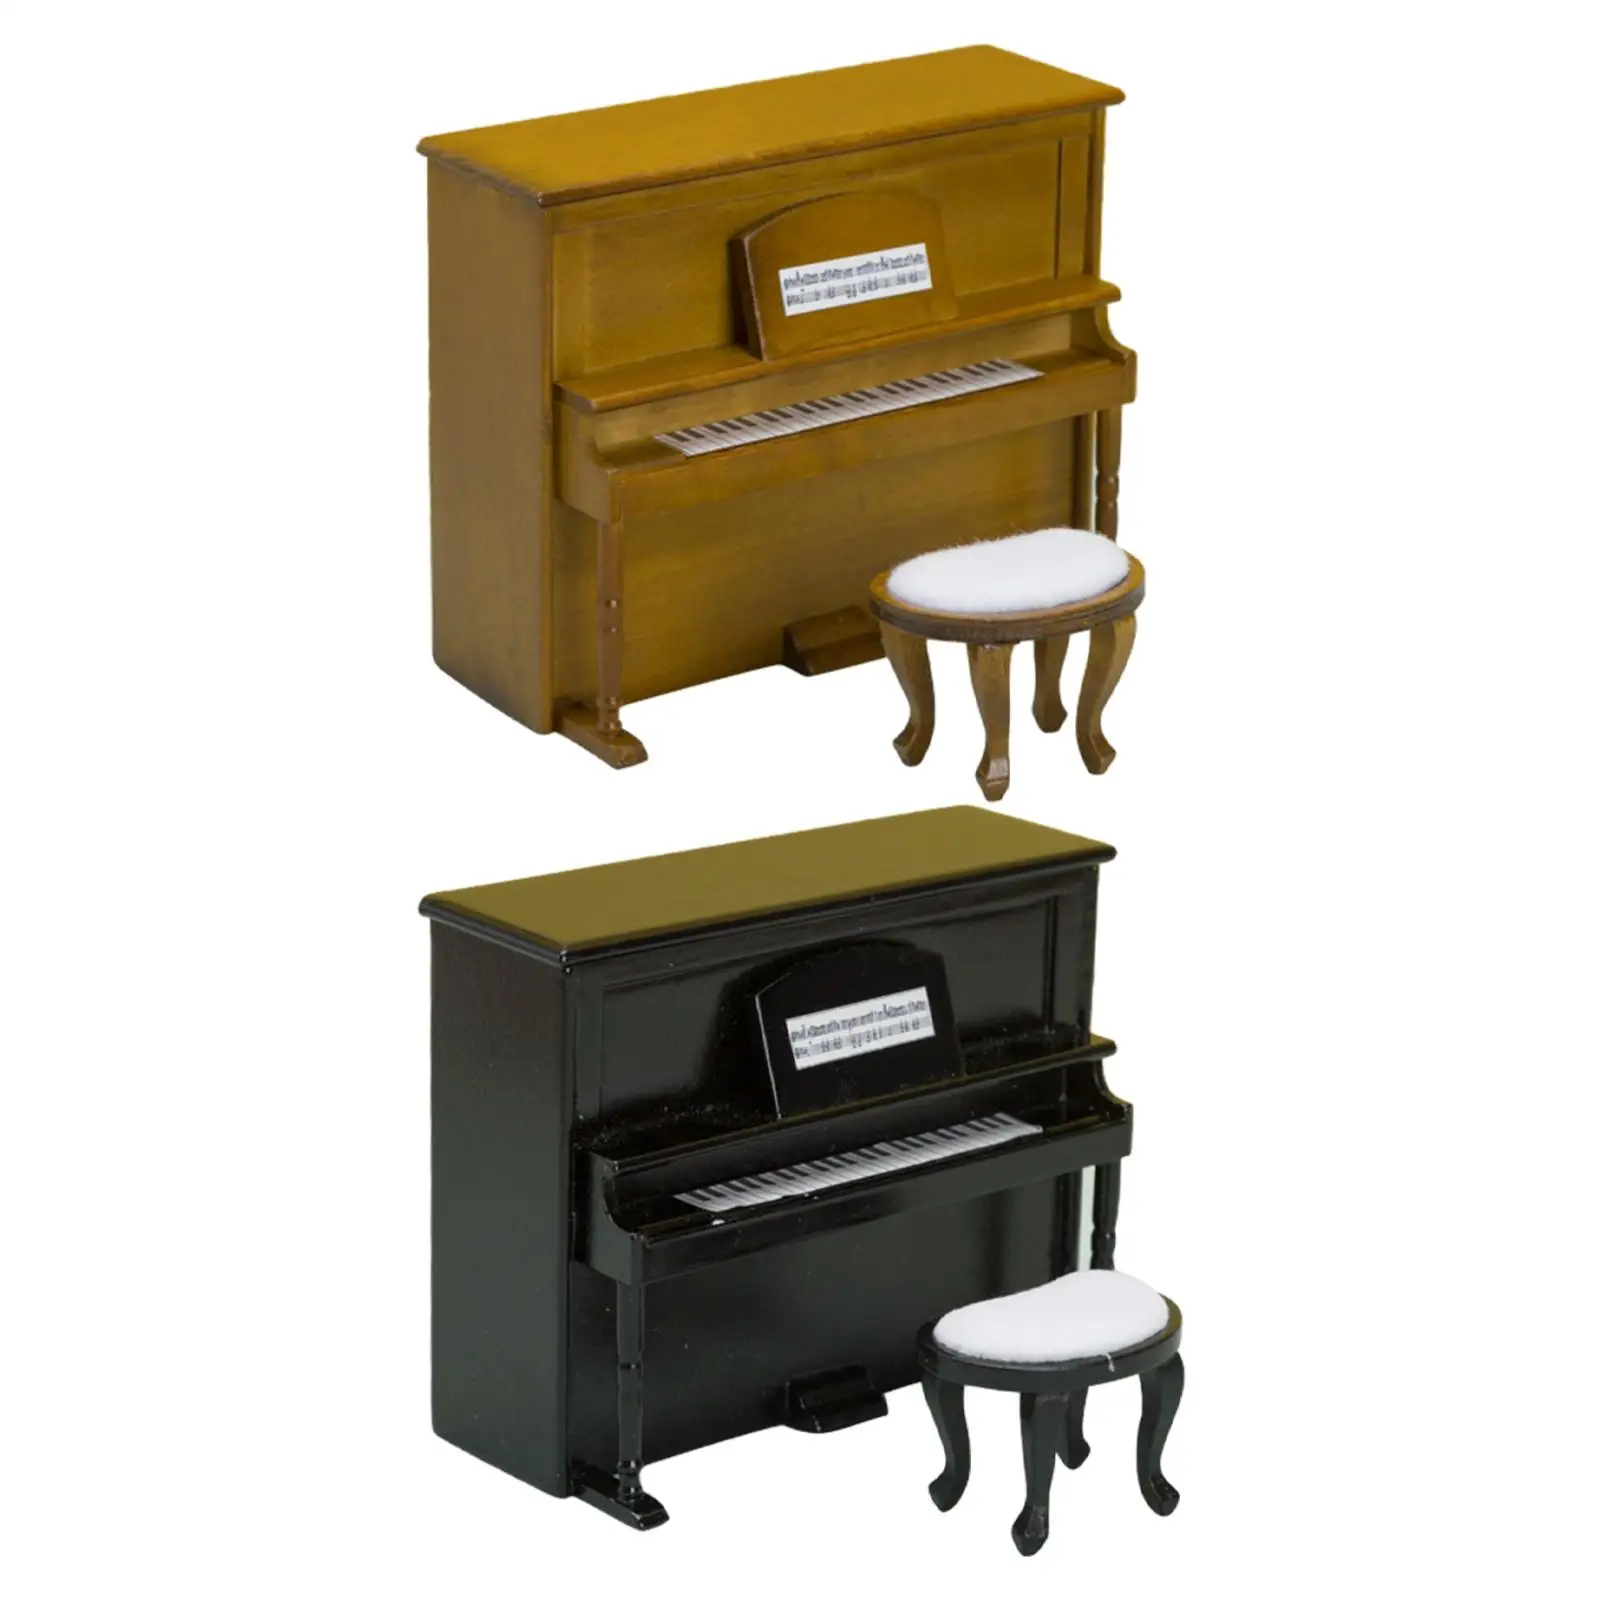 

Small Piano Model Ornaments Dollhouse Furniture, 1/12 Dollhouse Piano Model, Miniature Upright Piano with Stool